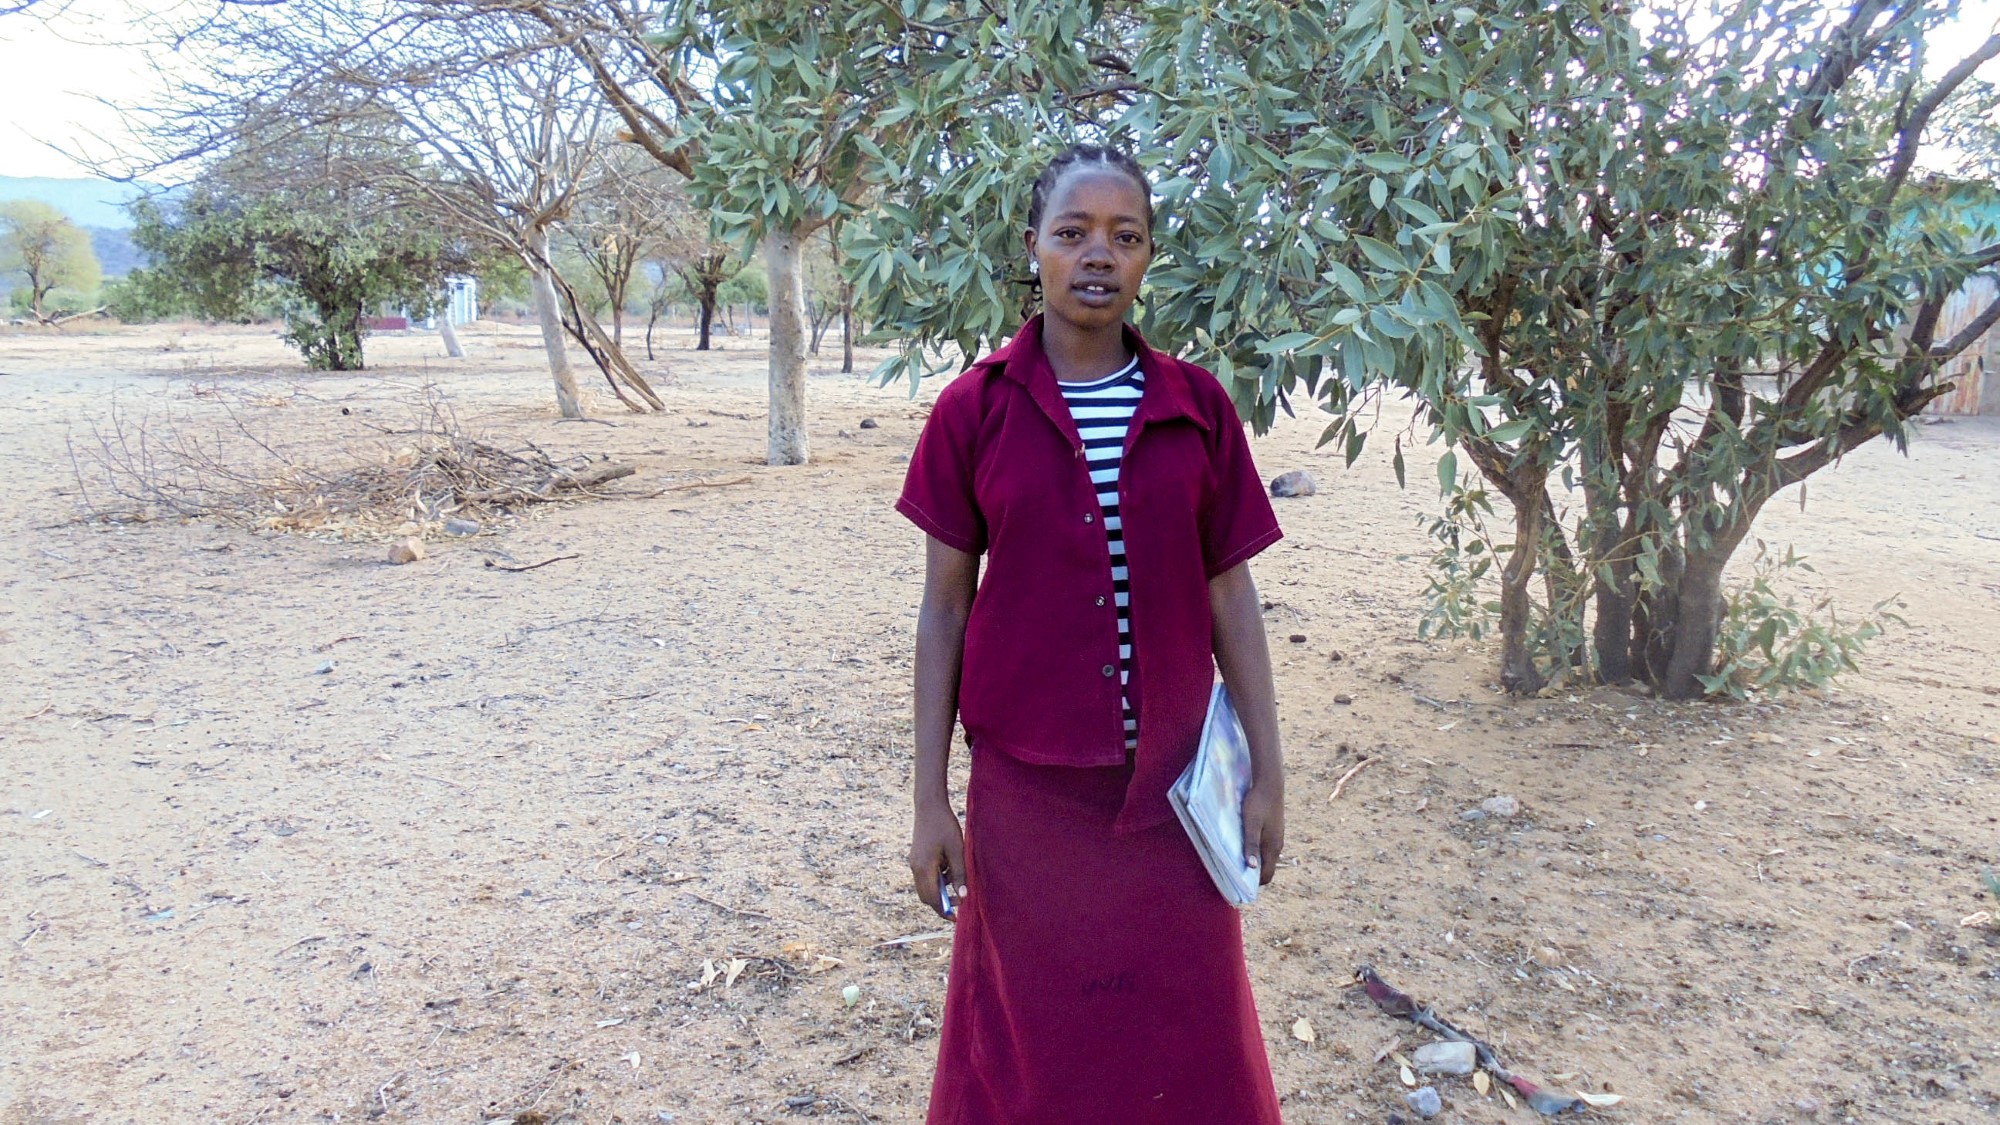 Ung etiopisk kvinne i lilla drakt smiler